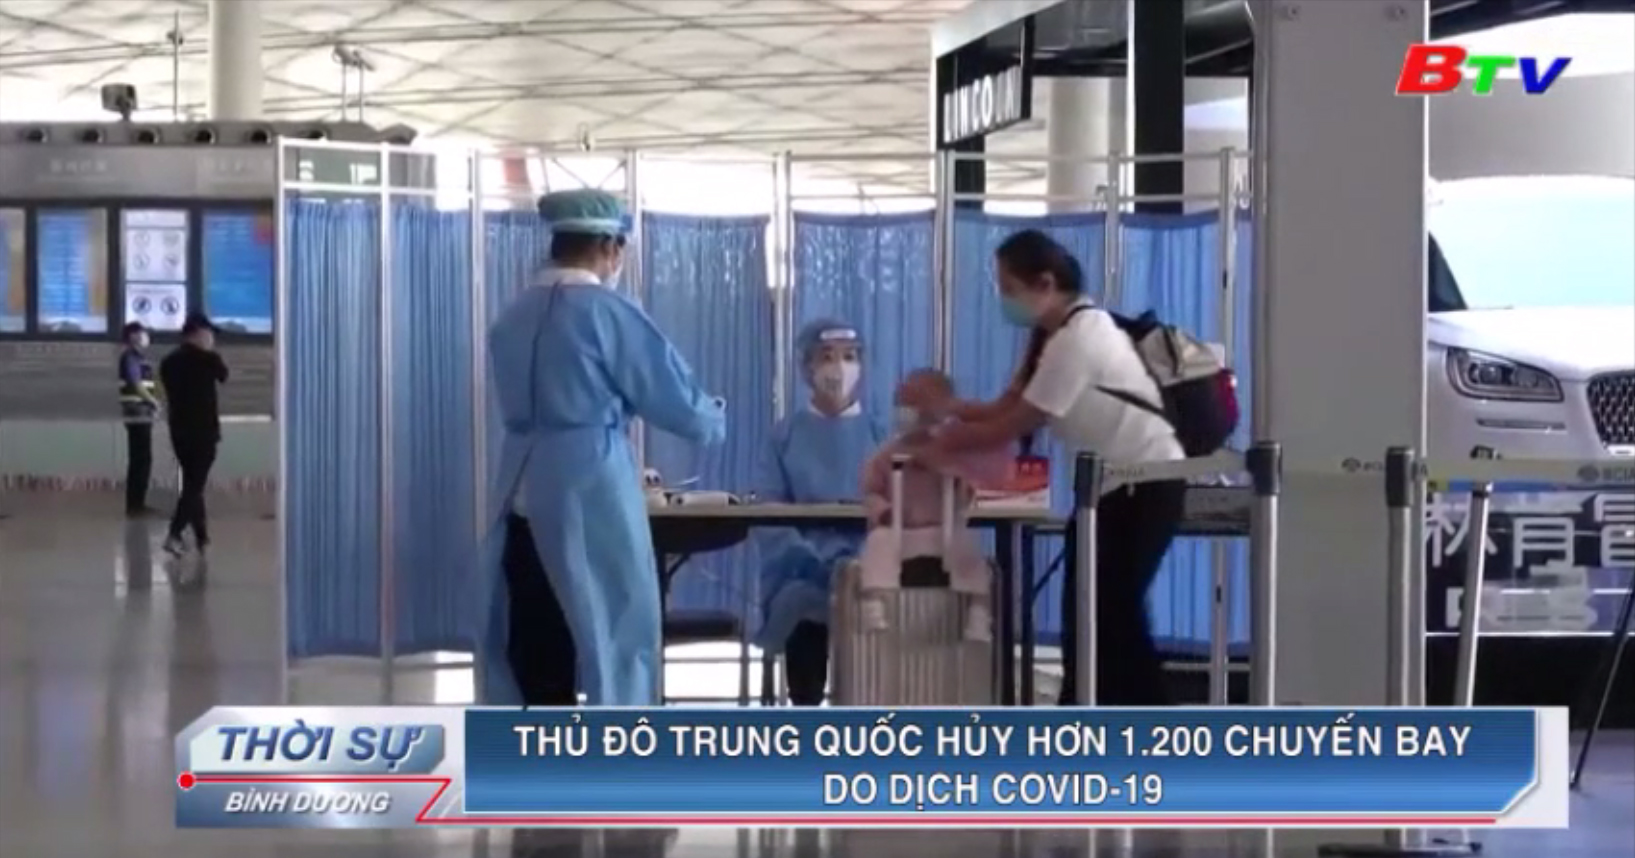 Thủ đô Trung Quốc hủy hơn 1.200 chuyến bay do dịch Covid-19